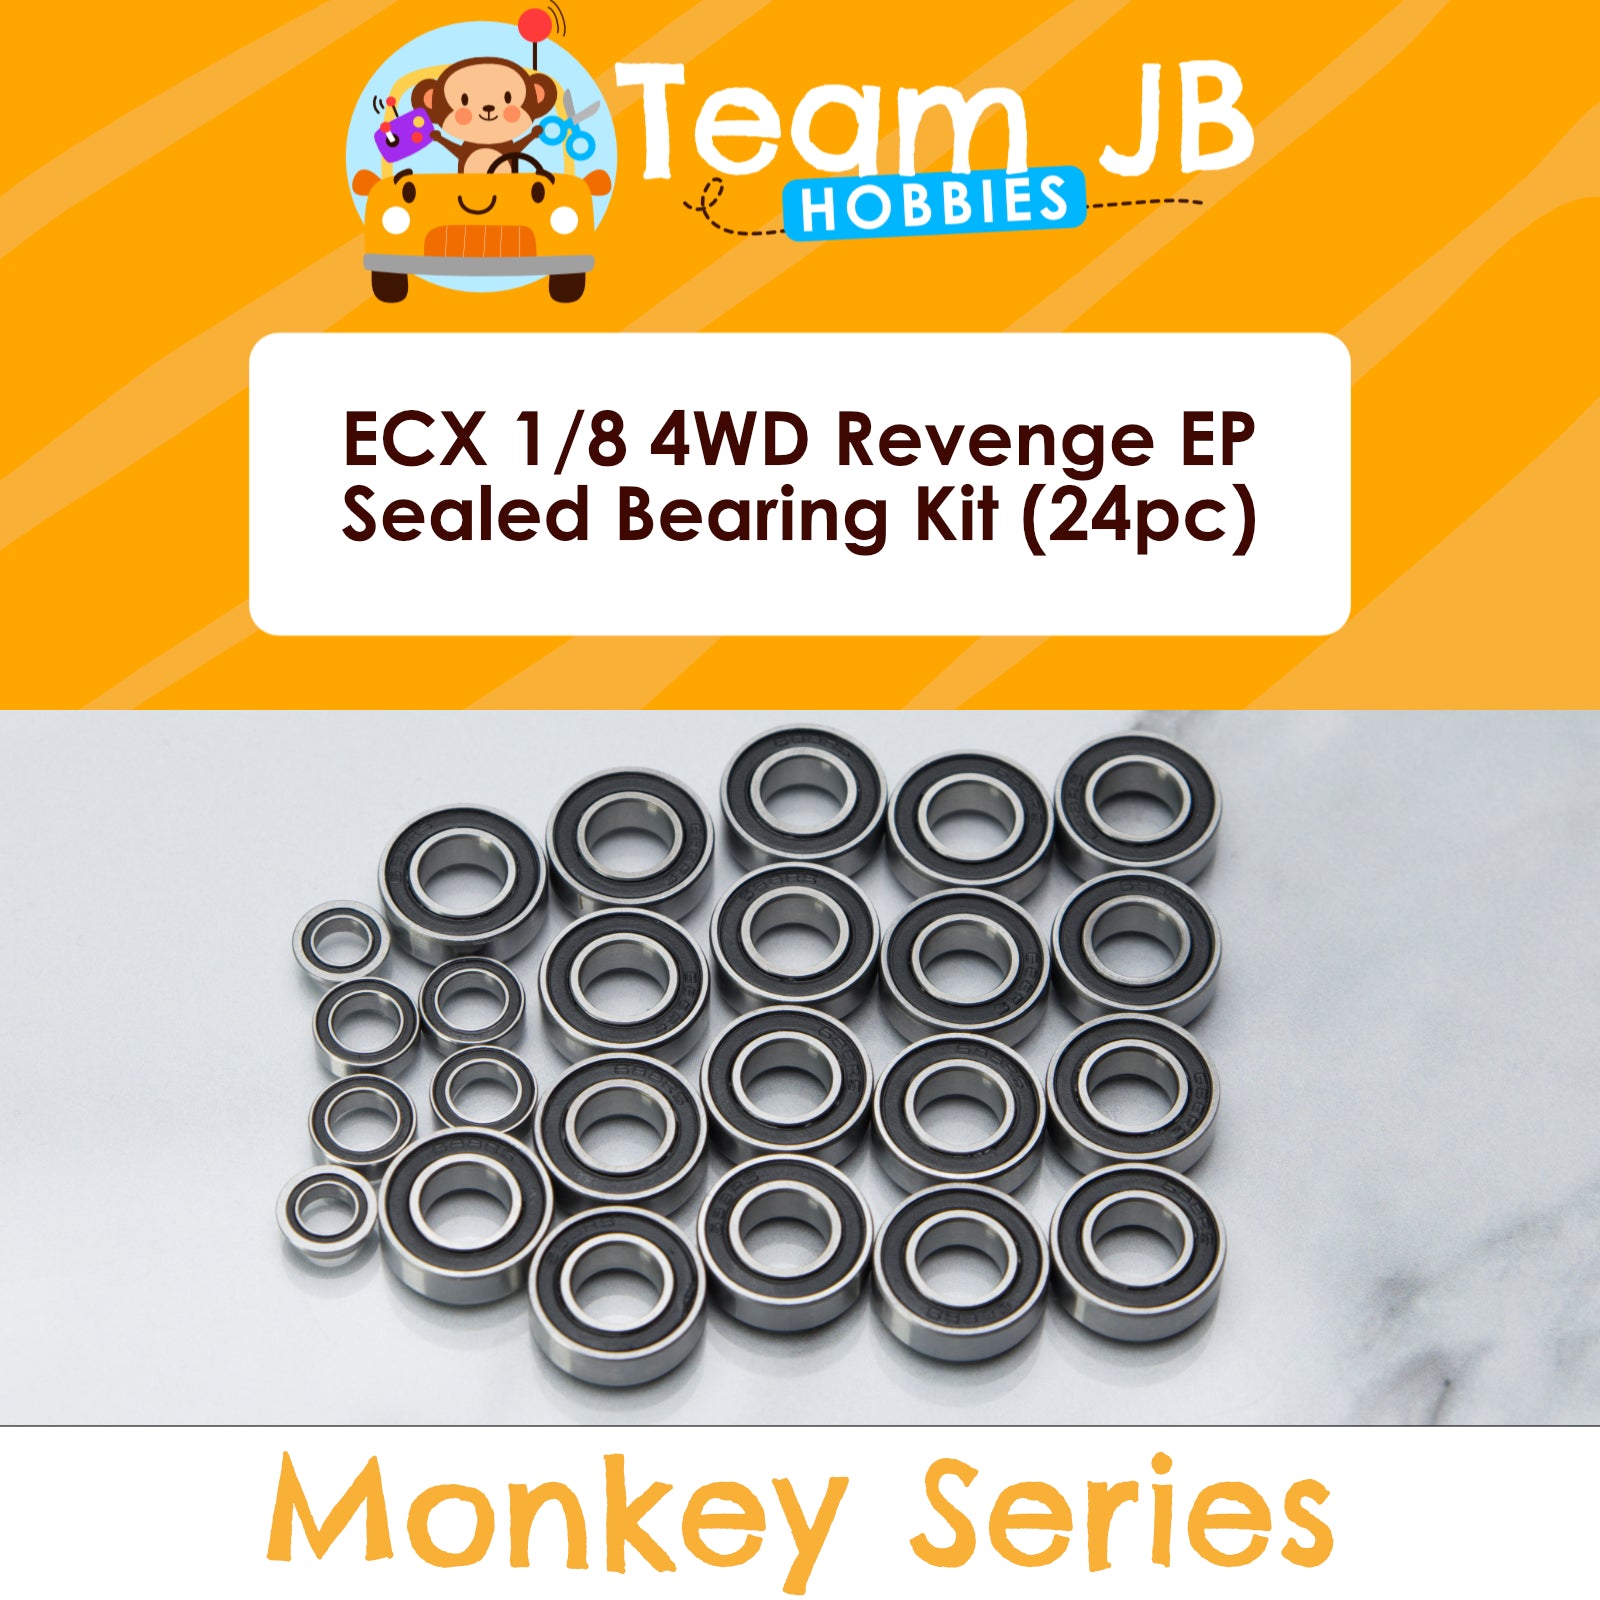 ECX 1/8 4WD Revenge EP - Sealed Bearing Kit